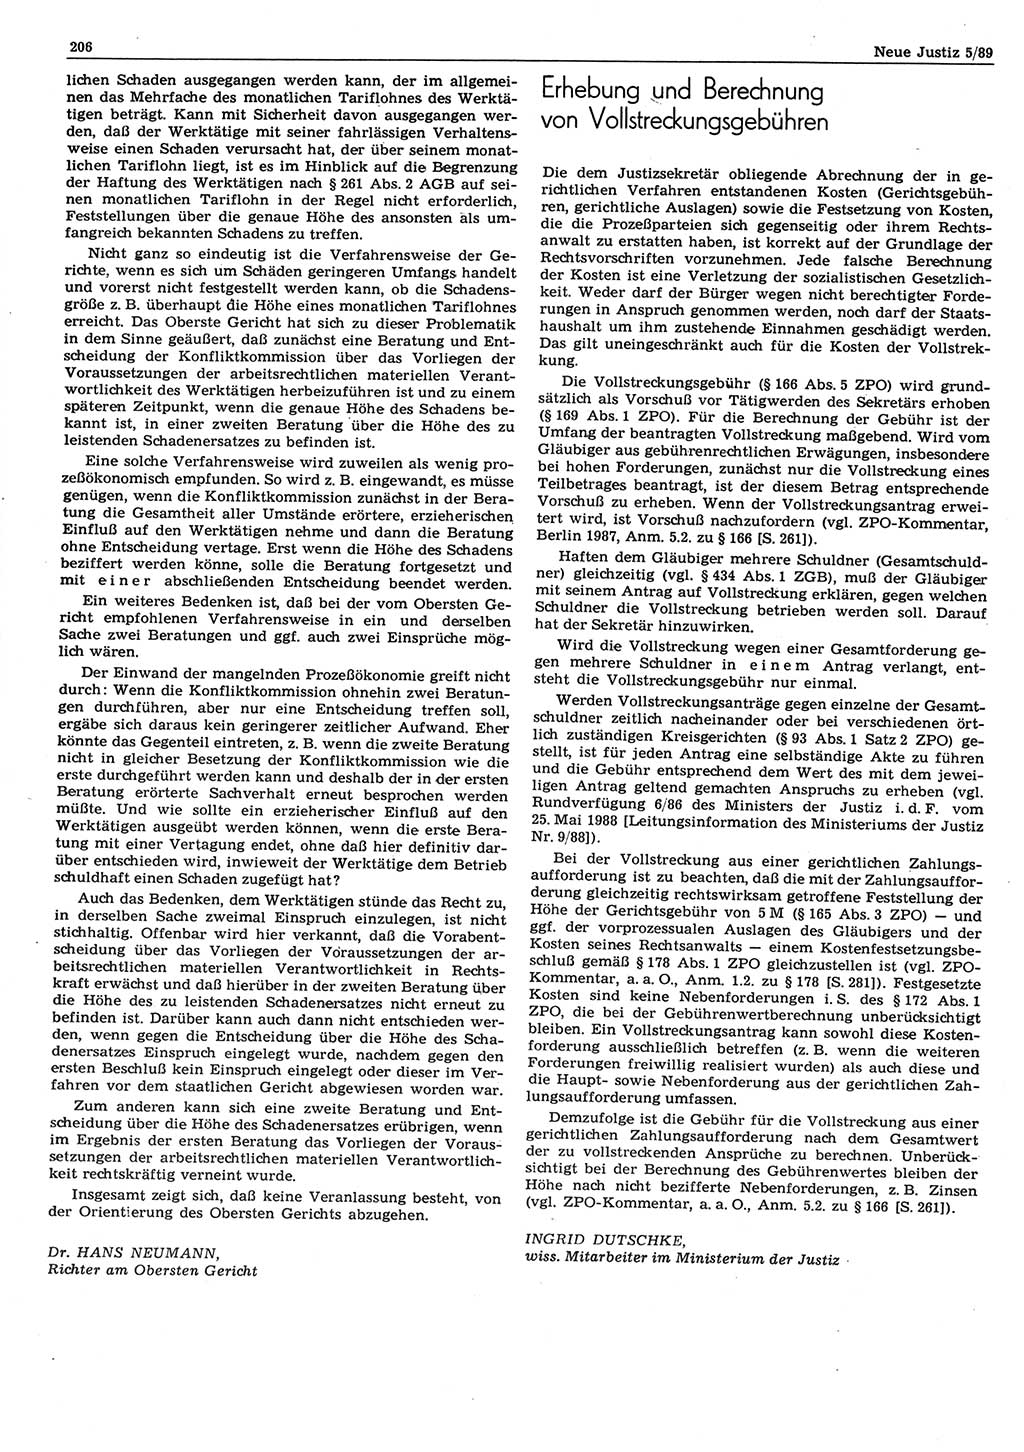 Neue Justiz (NJ), Zeitschrift für sozialistisches Recht und Gesetzlichkeit [Deutsche Demokratische Republik (DDR)], 43. Jahrgang 1989, Seite 206 (NJ DDR 1989, S. 206)